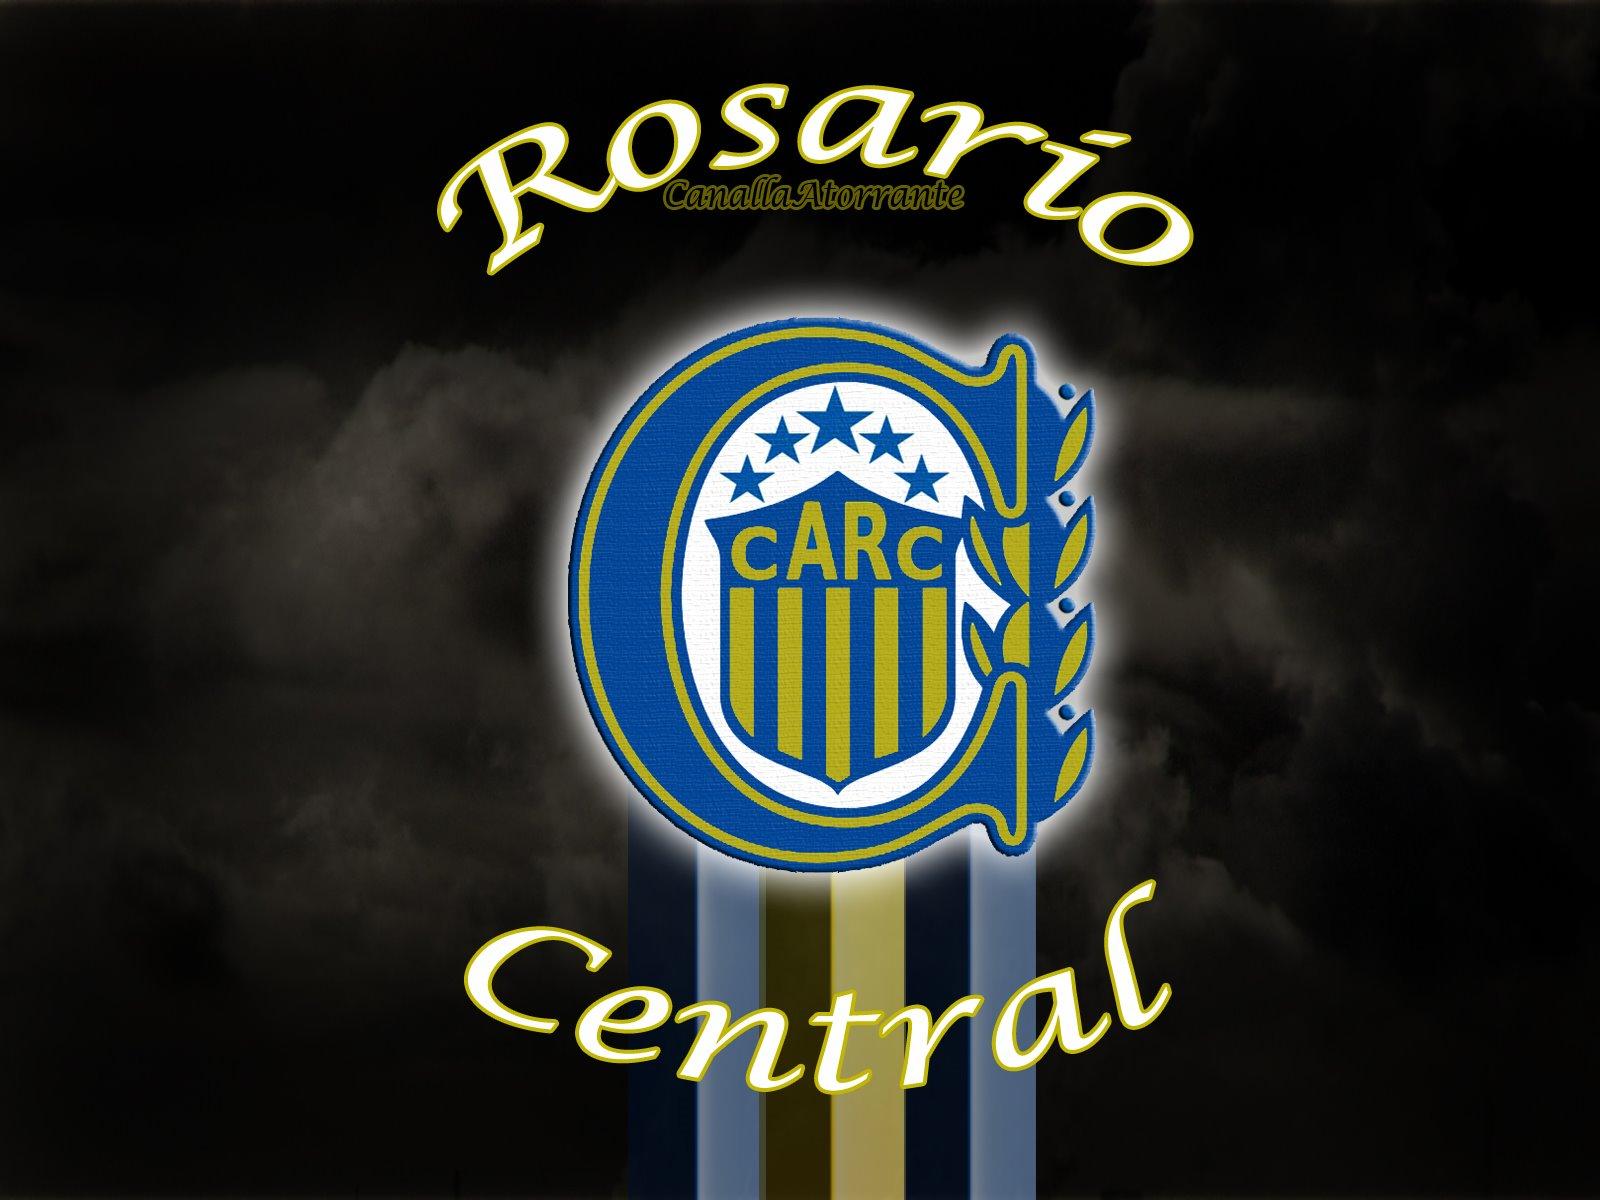 باشگاه فوتبال روساریو سنترال (Club Atlético Rosario Central)